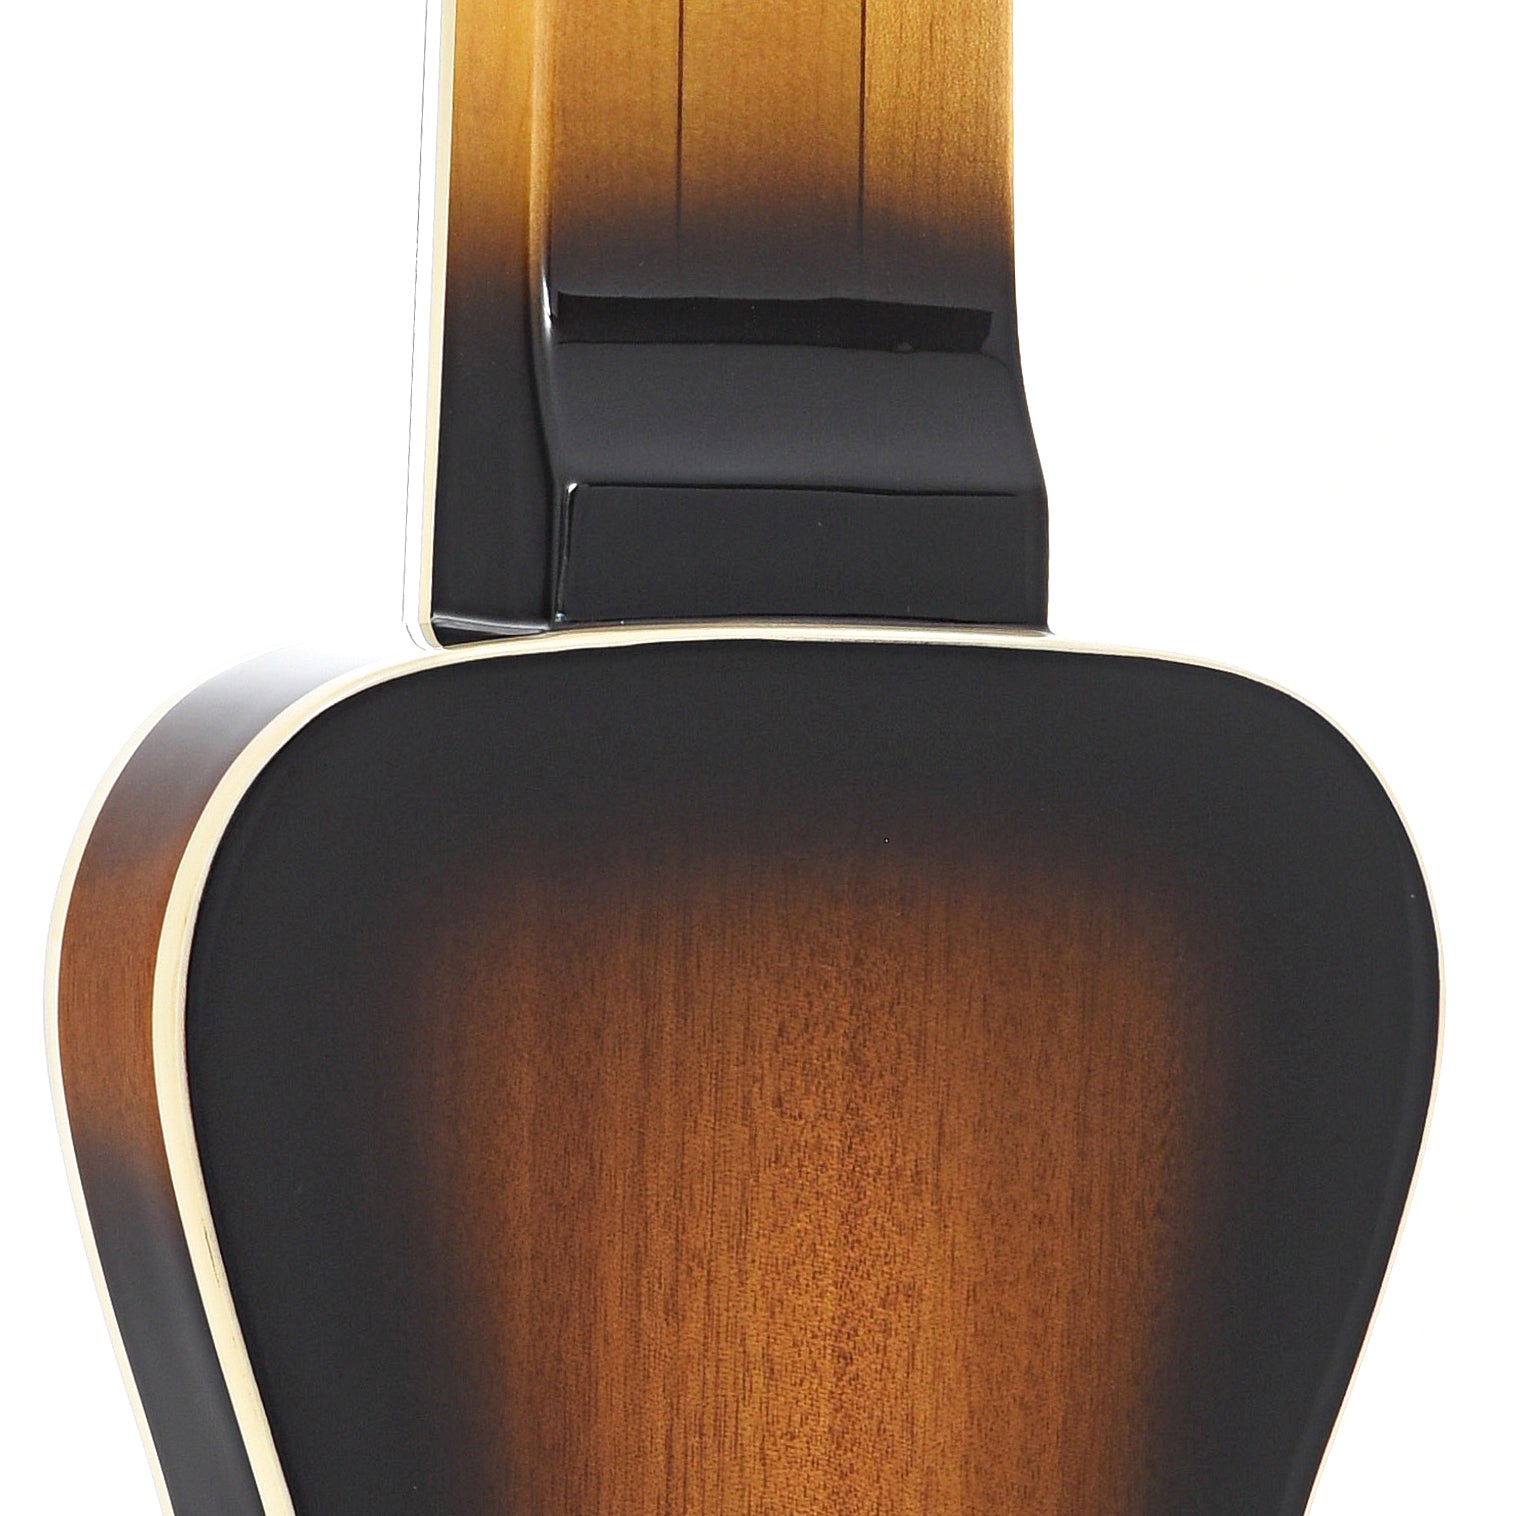 Heel of Gold Tone LS-8 Lap Steel Guitar